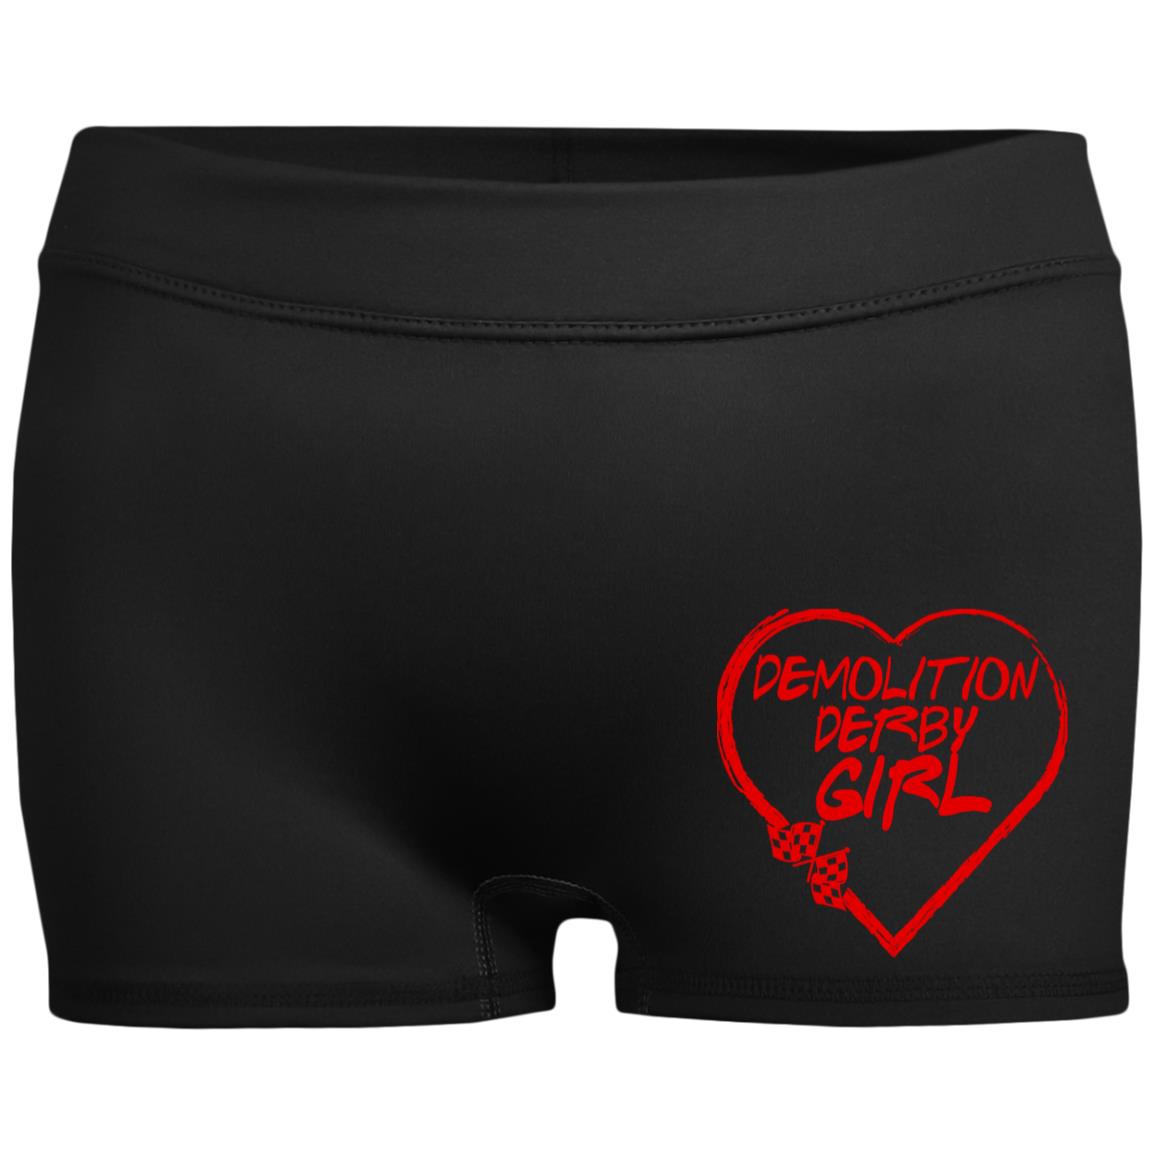 Demolition Derby Girl Heart Ladies' Fitted Moisture-Wicking 2.5 inch Inseam Shorts